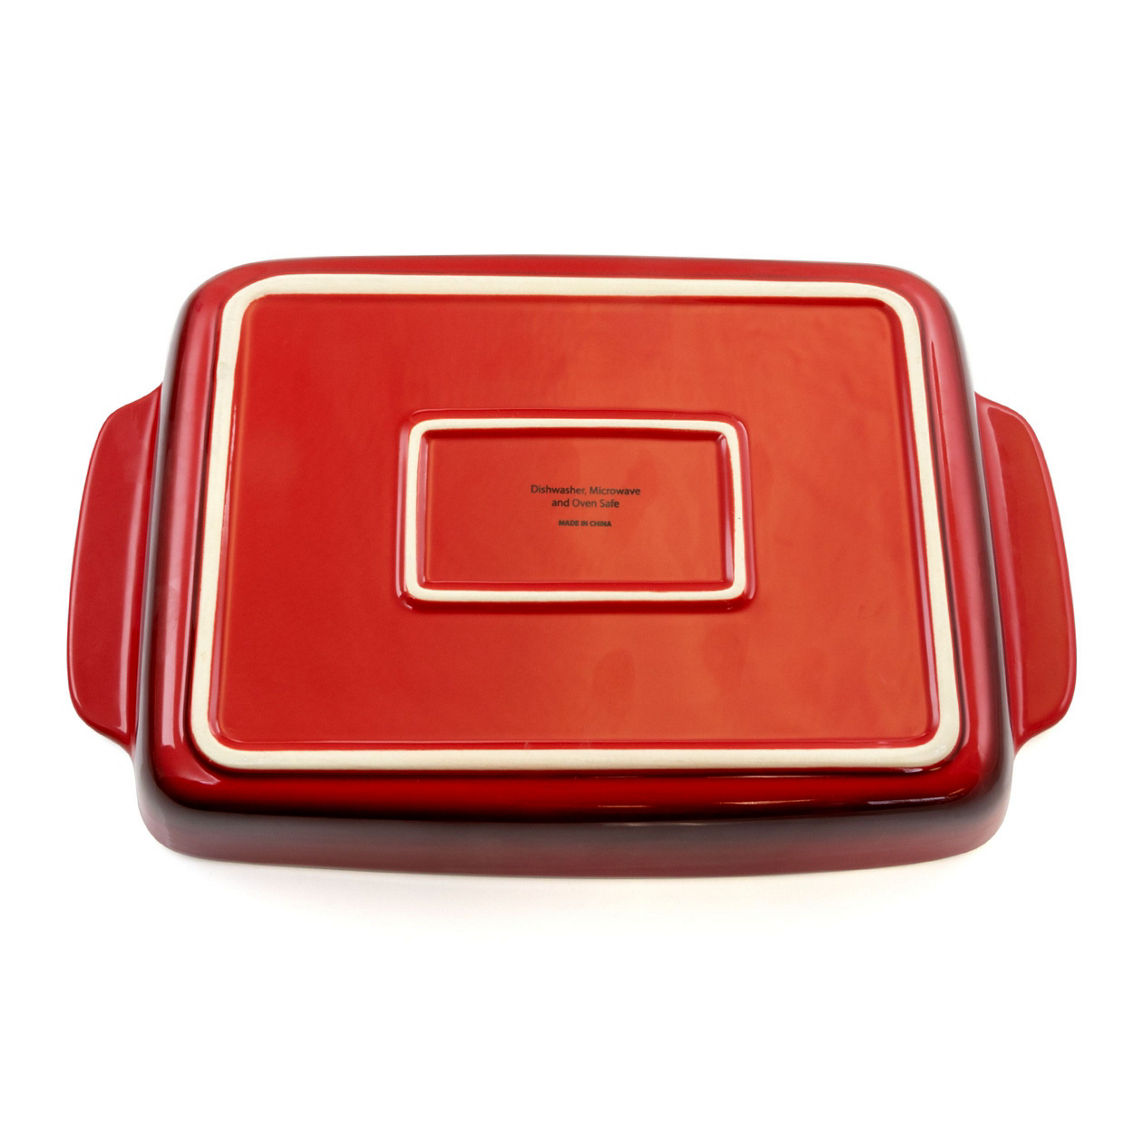 Crock Pot Artisan 5.6 Quart Stoneware Bake Pan in Red - Image 4 of 5